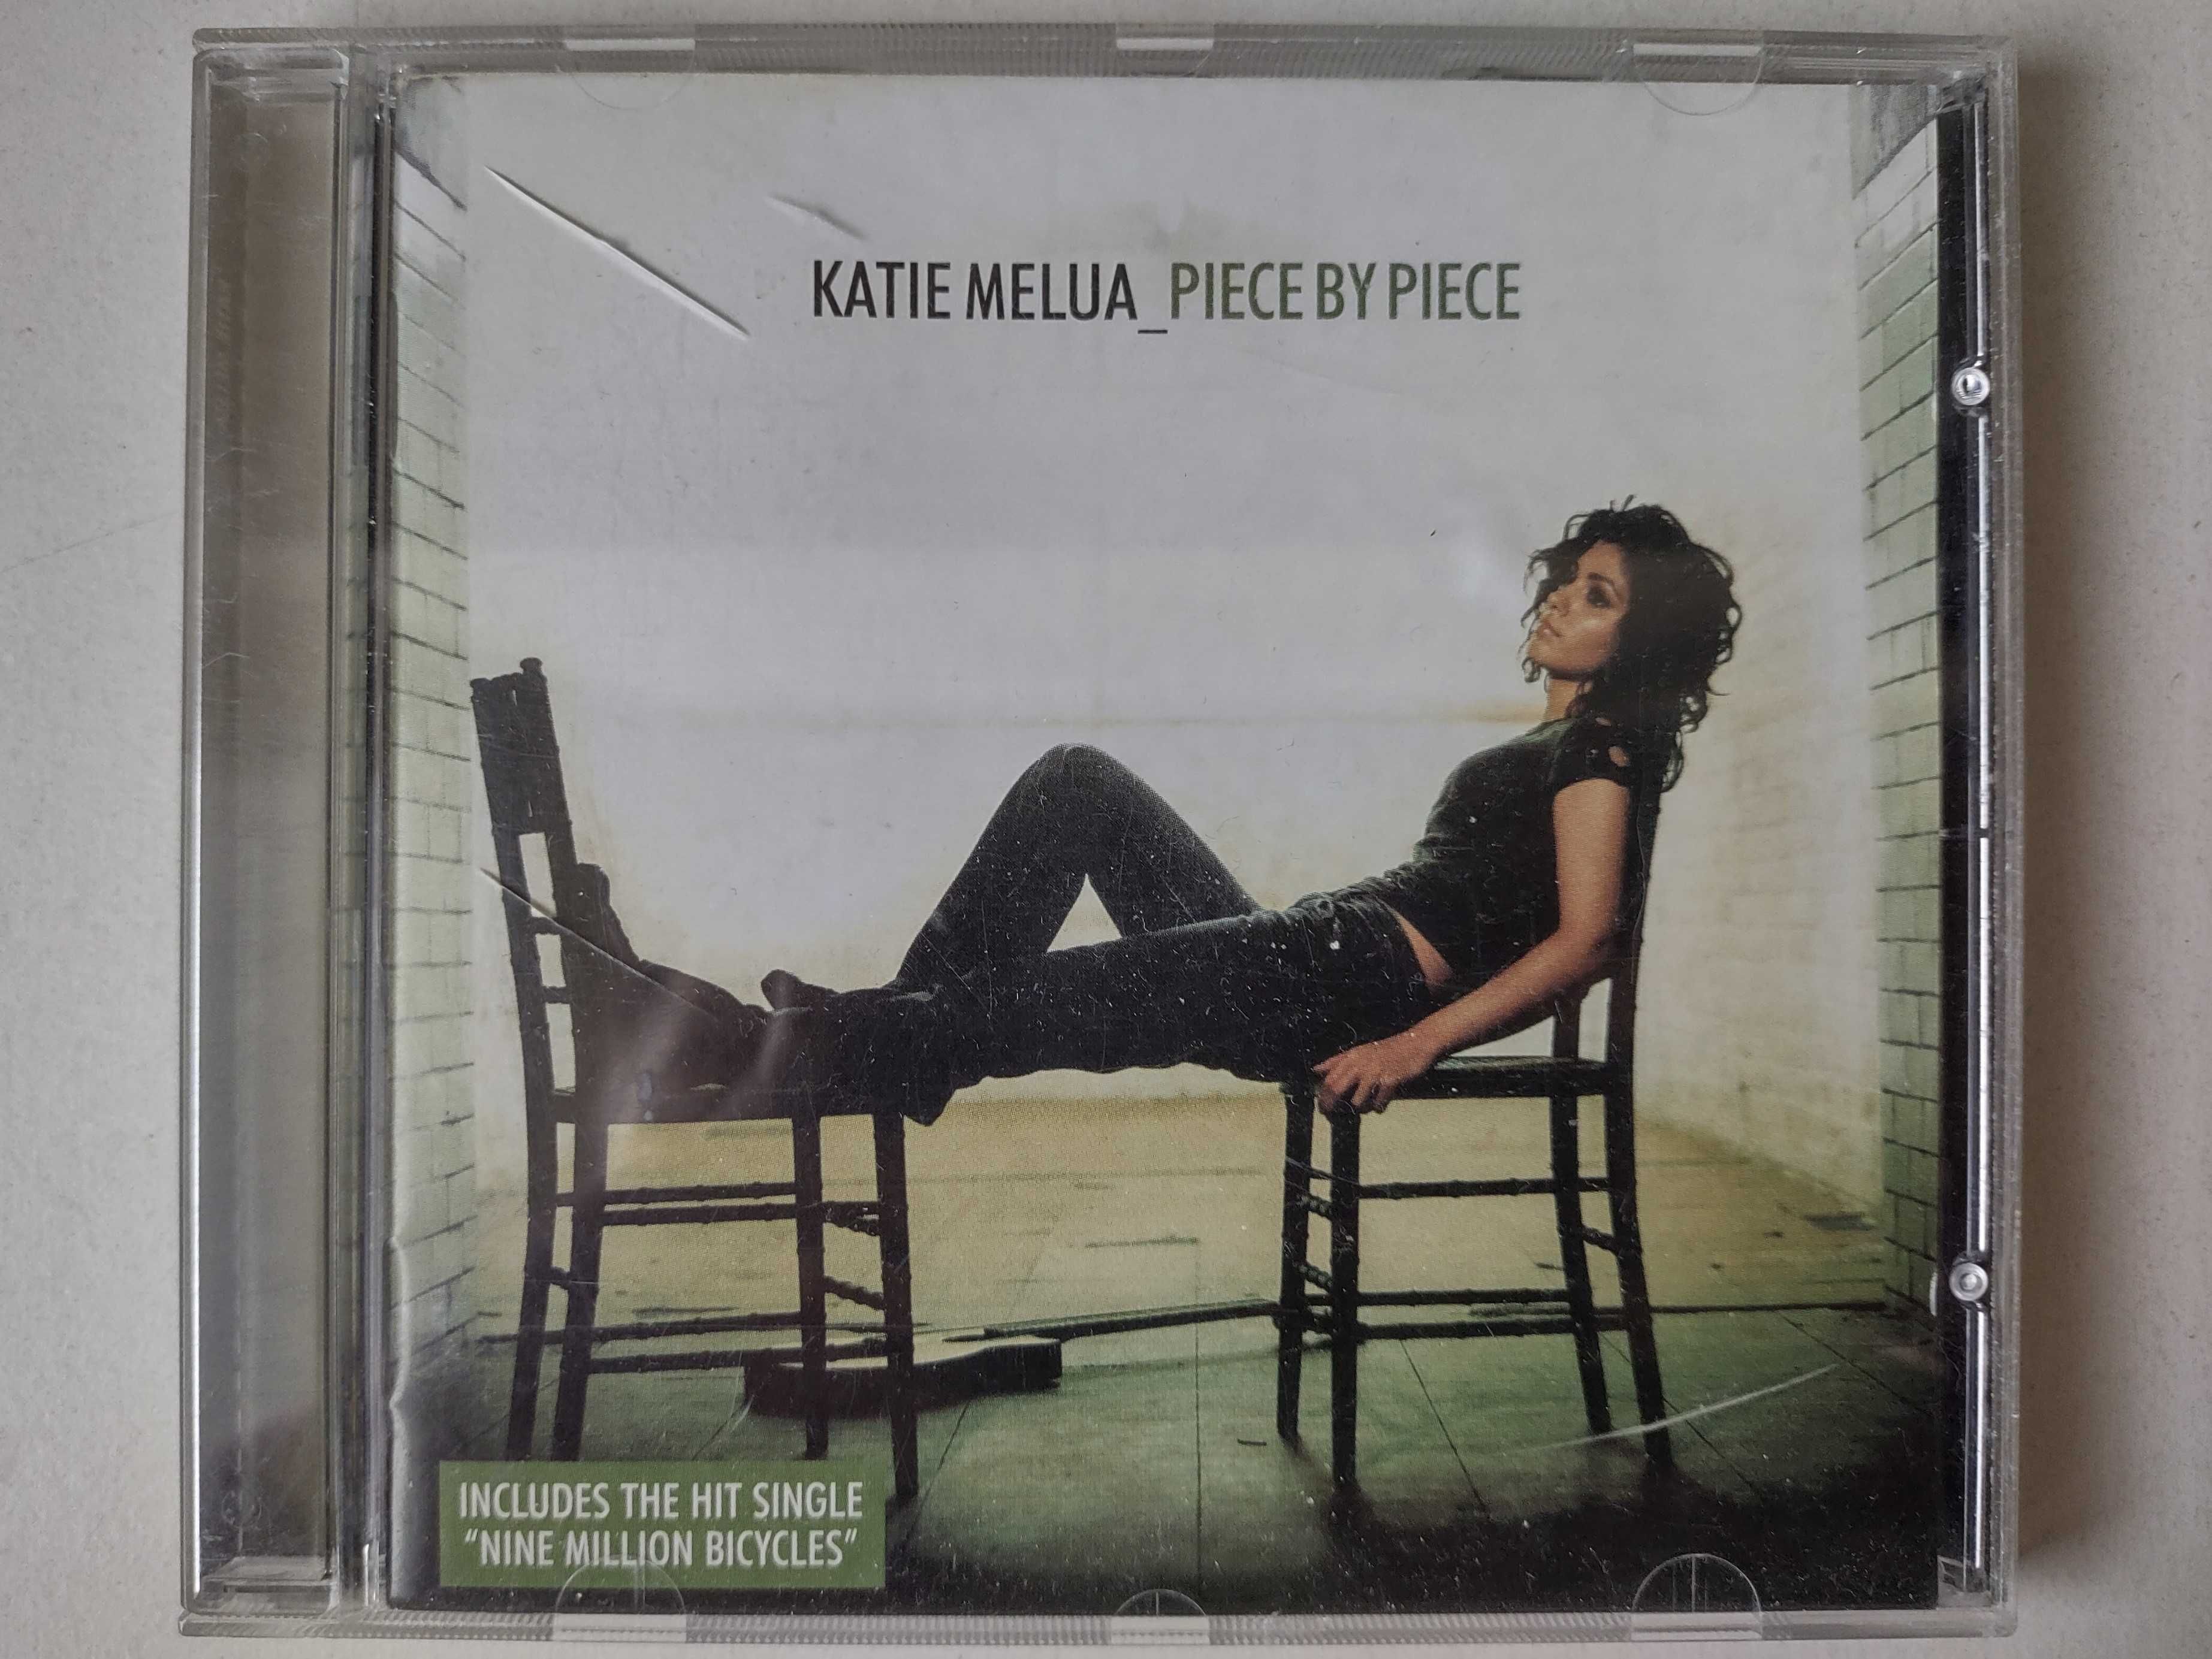 Katie Melua "Piece by piece" CD